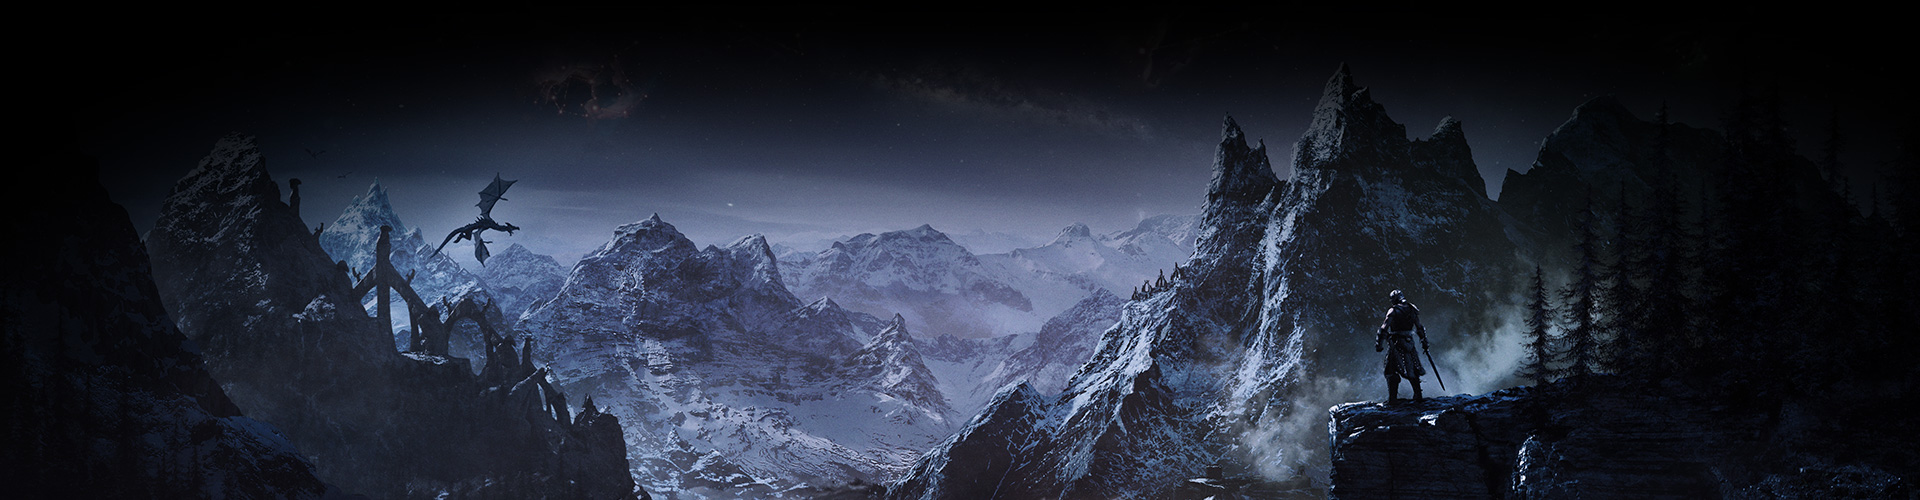 Um personagem a olhar para um vale de montanhas com neve enquanto um dragão voa acima dele